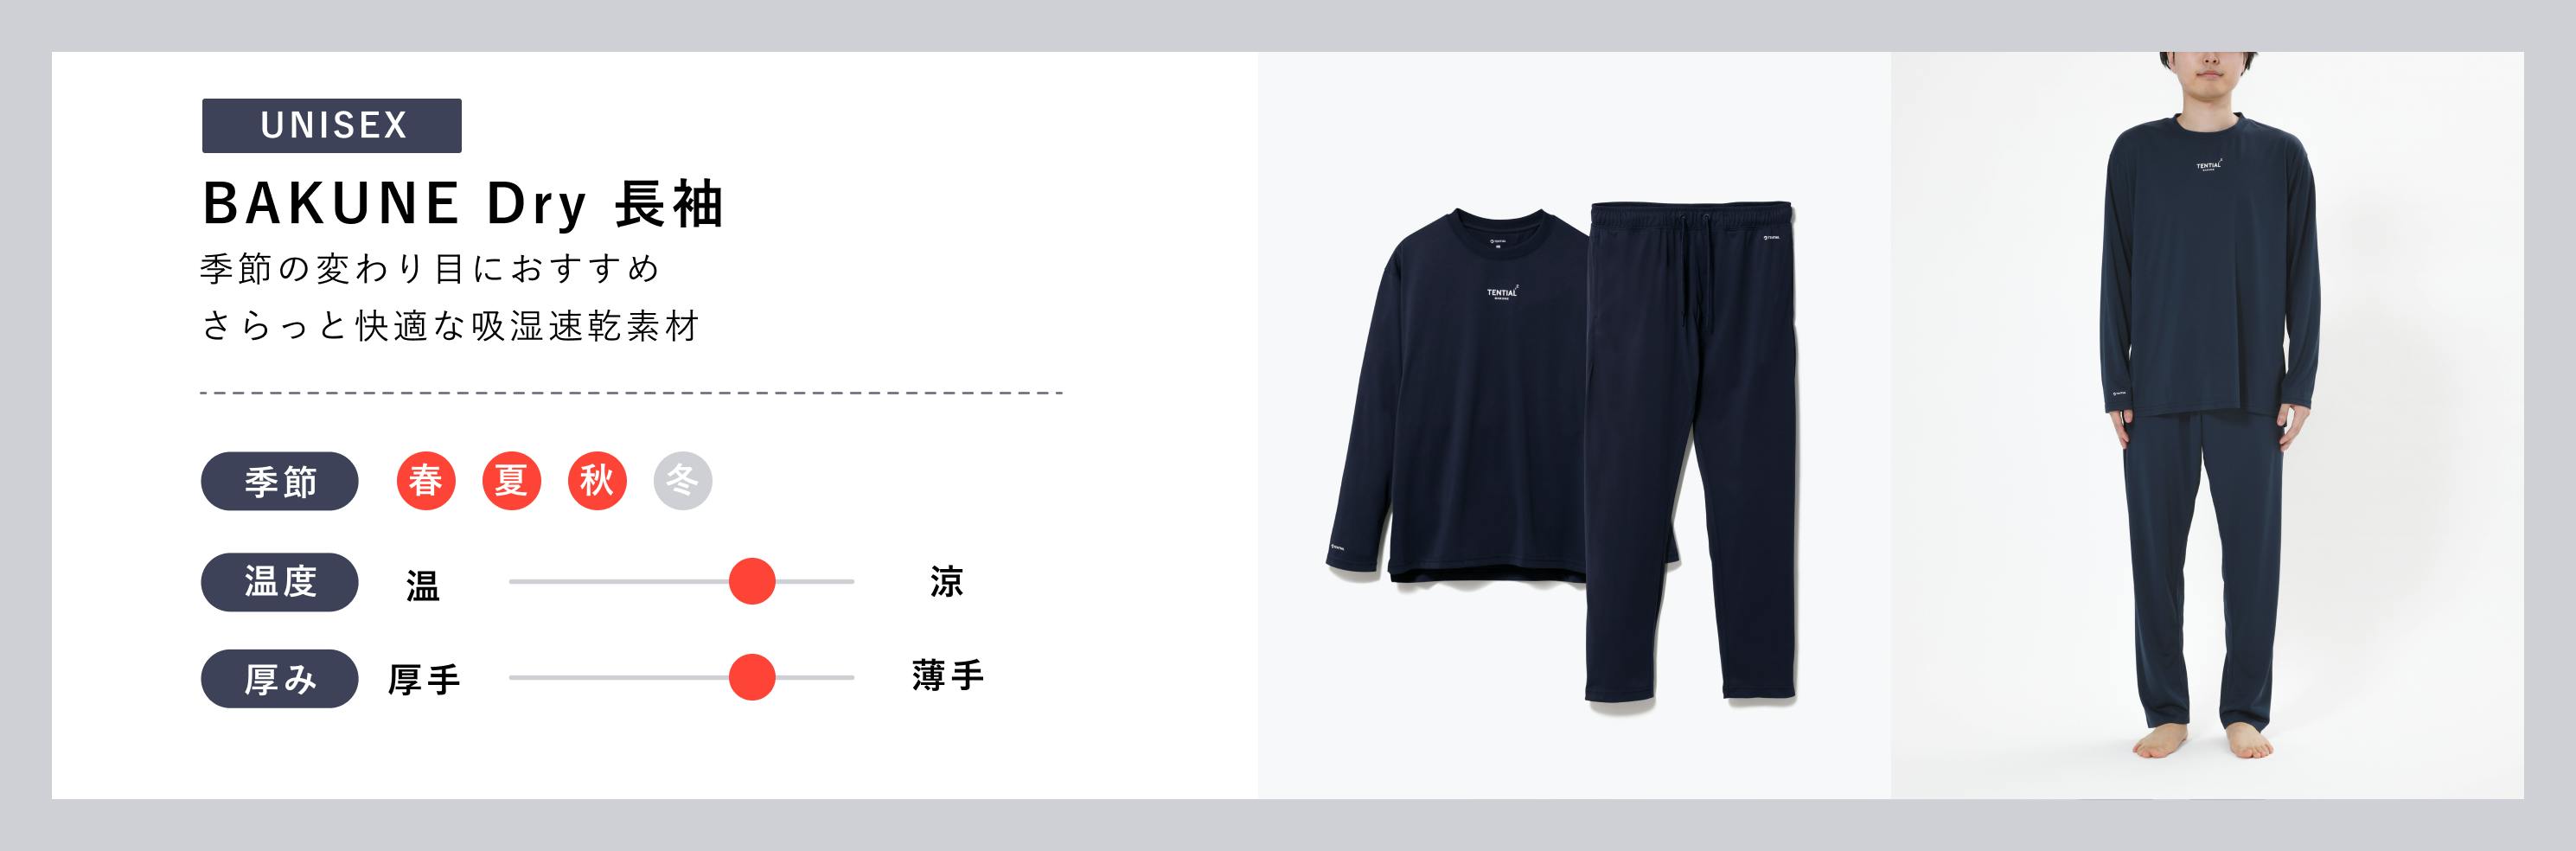 UNISEX【BAKUNE dry 長袖】季節の変わり目におすすめ。さらっと快適な吸湿速乾素材